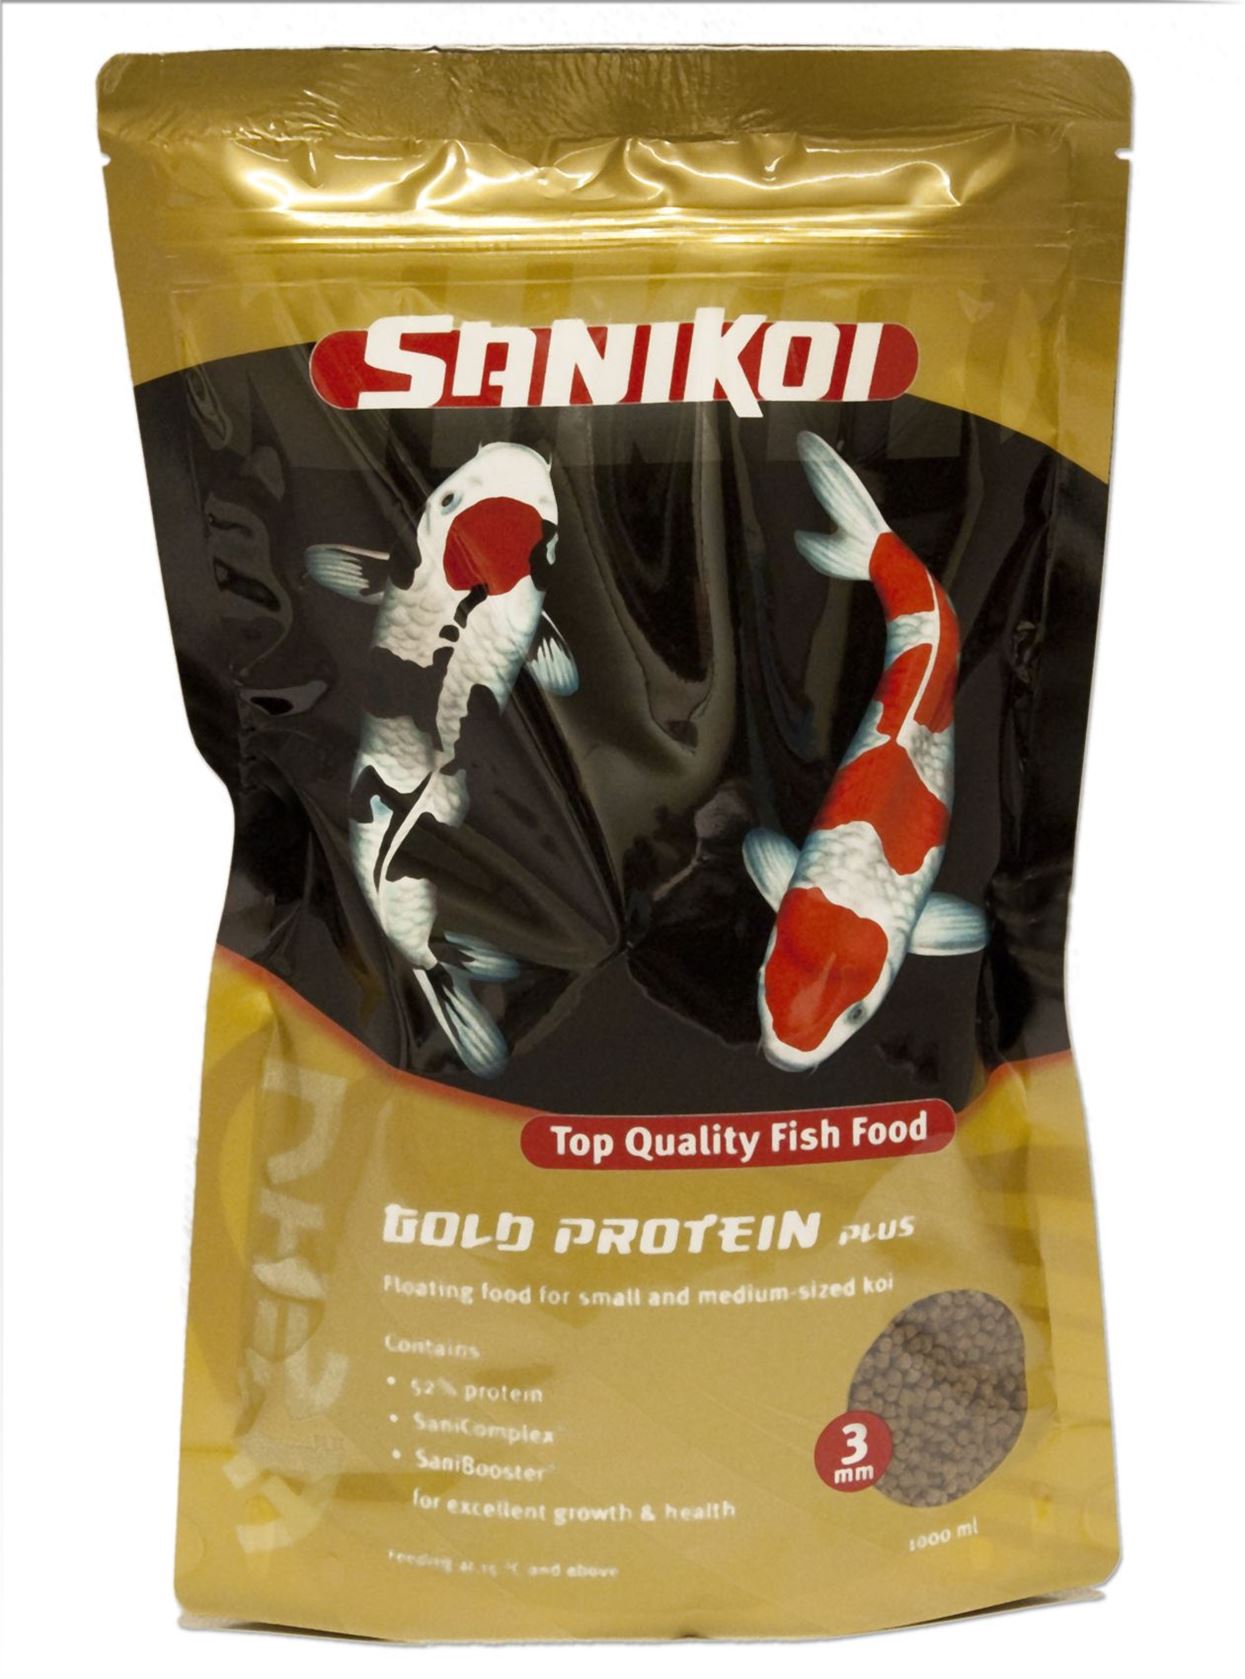 SaniKoi-Gold-Protein-Plus-3-mm-1-l-met-52-eiwit-voor-excellente-groei-en-gezondheid